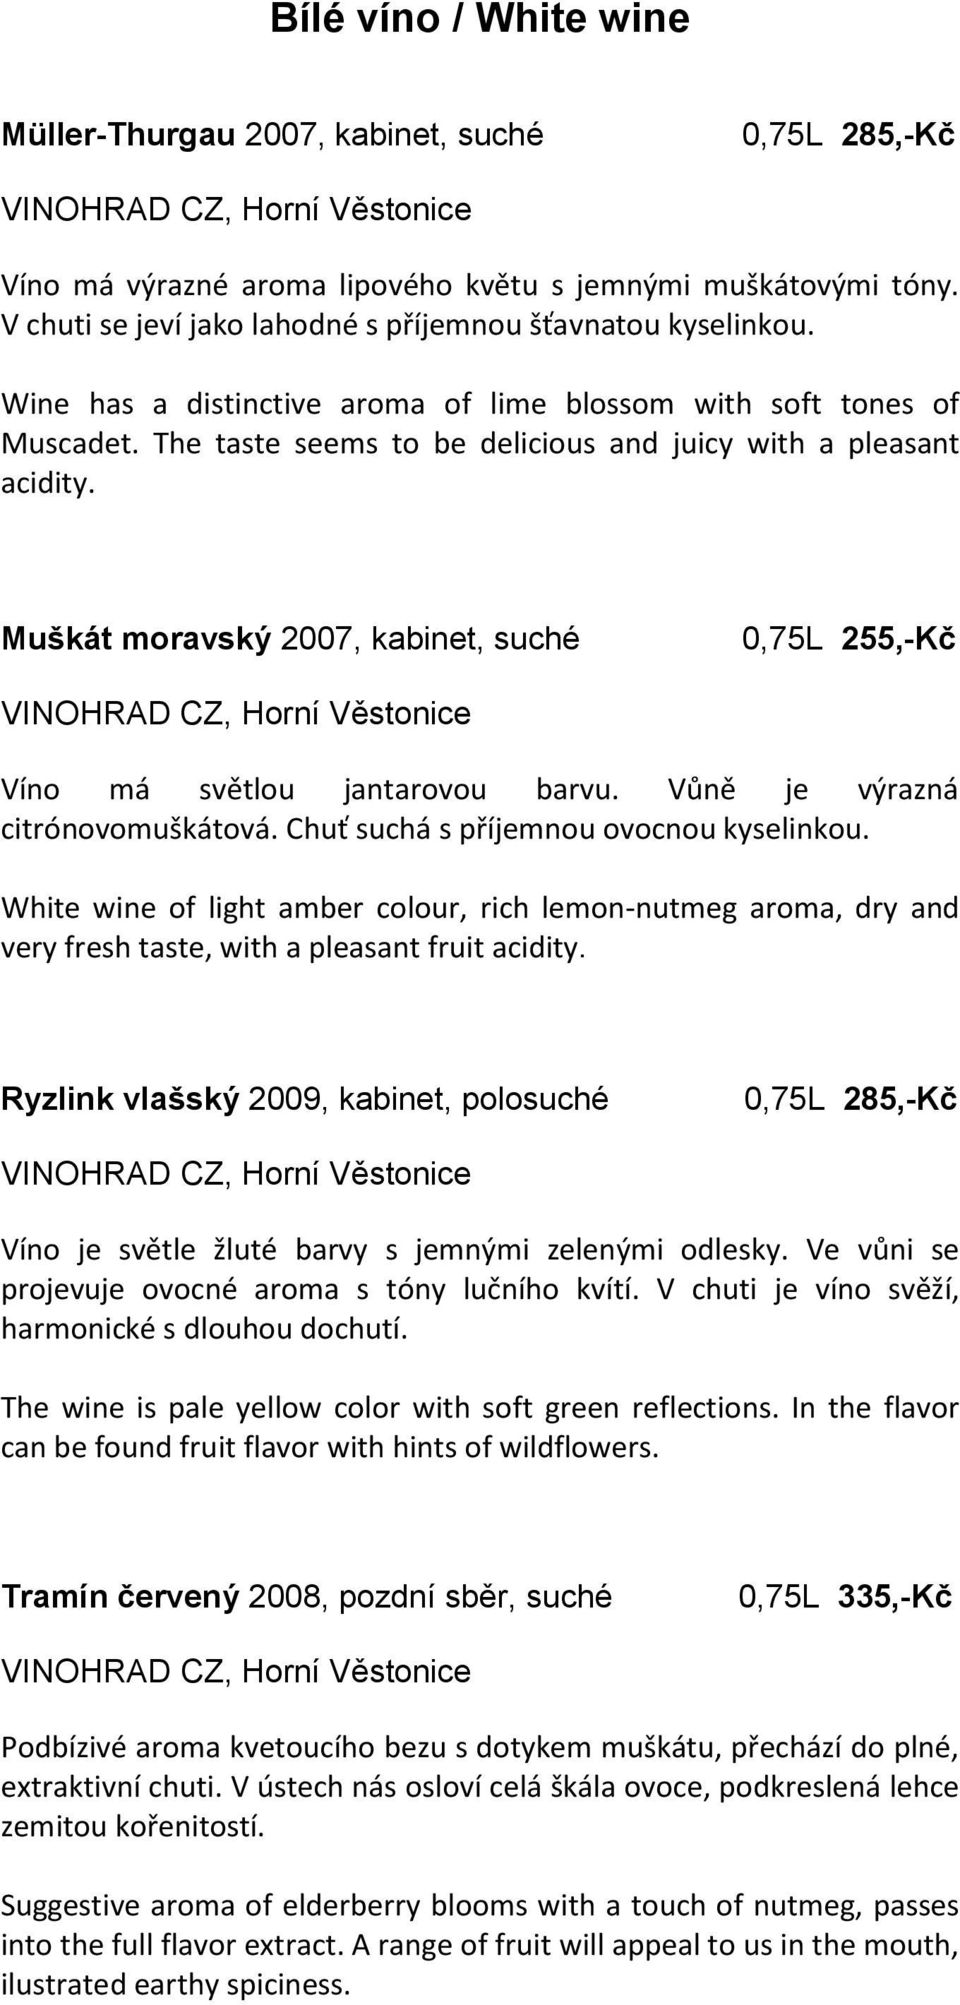 Muškát moravský 2007, kabinet, suché 0,75L 255,-Kč Víno má světlou jantarovou barvu. Vůně je výrazná citrónovomuškátová. Chuť suchá s příjemnou ovocnou kyselinkou.